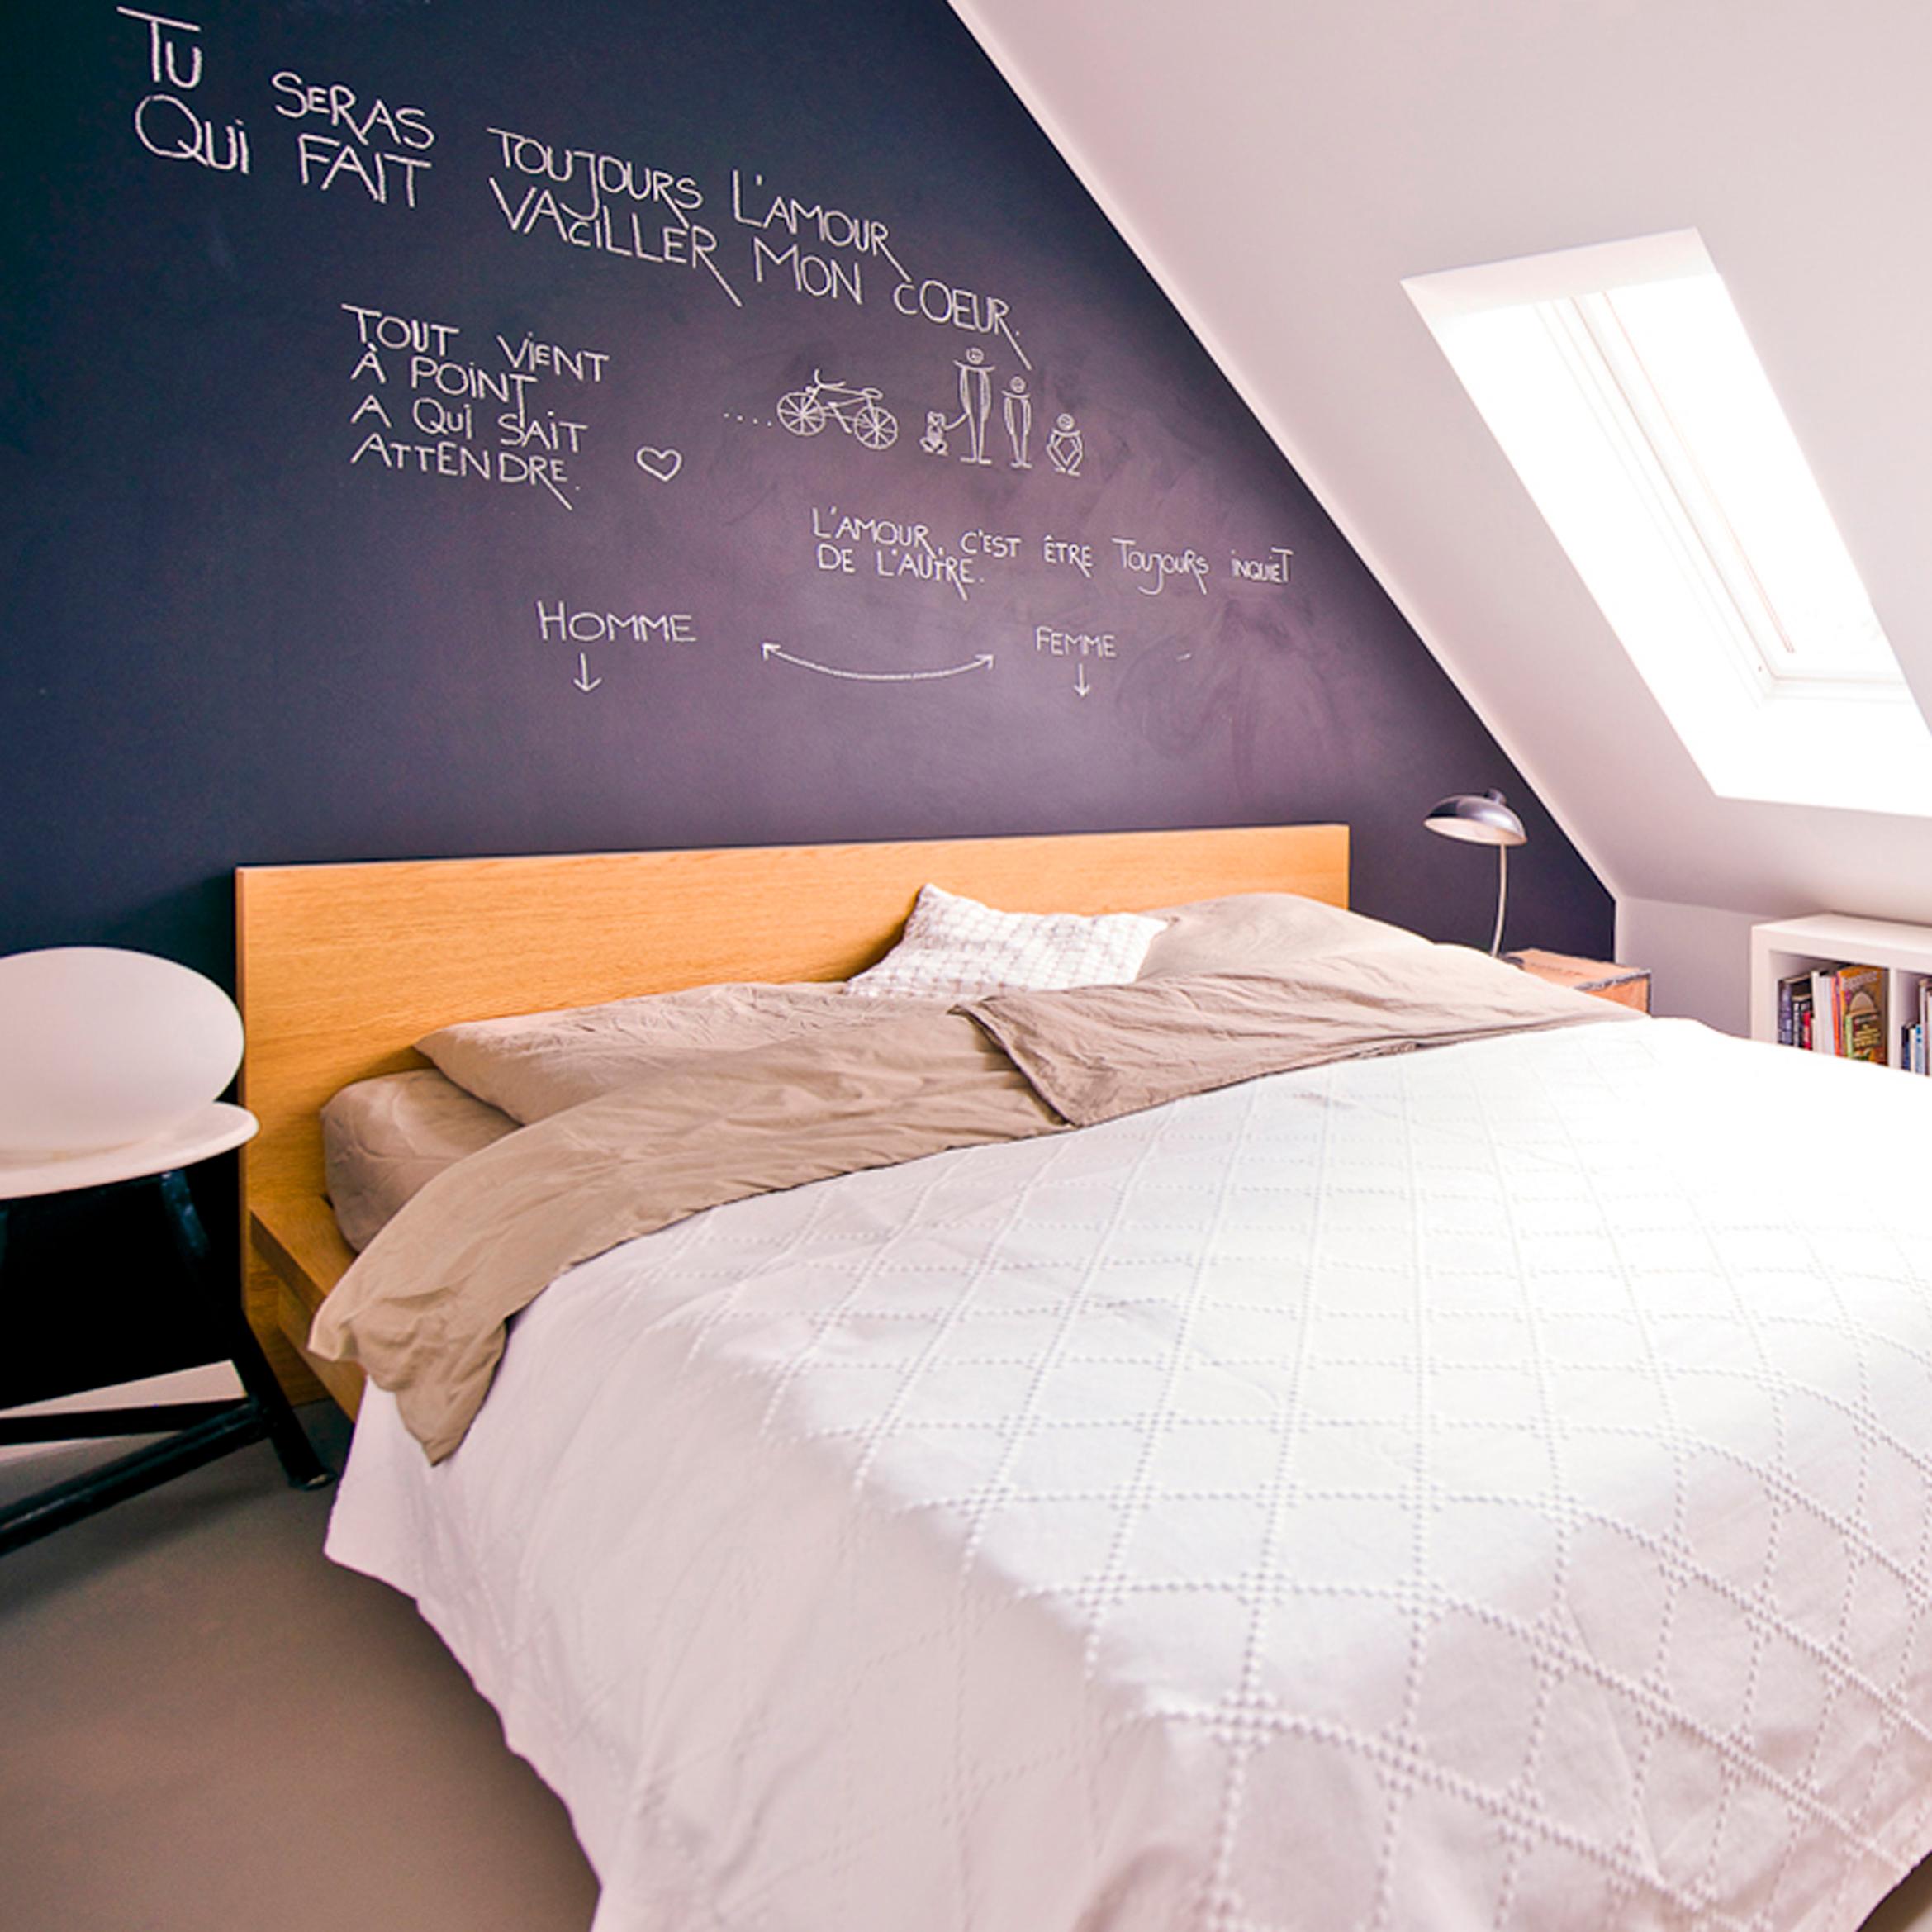 Schlafzimmer mit schwarzer Tafelfarbe #betonboden #bett ©Zolaproduction